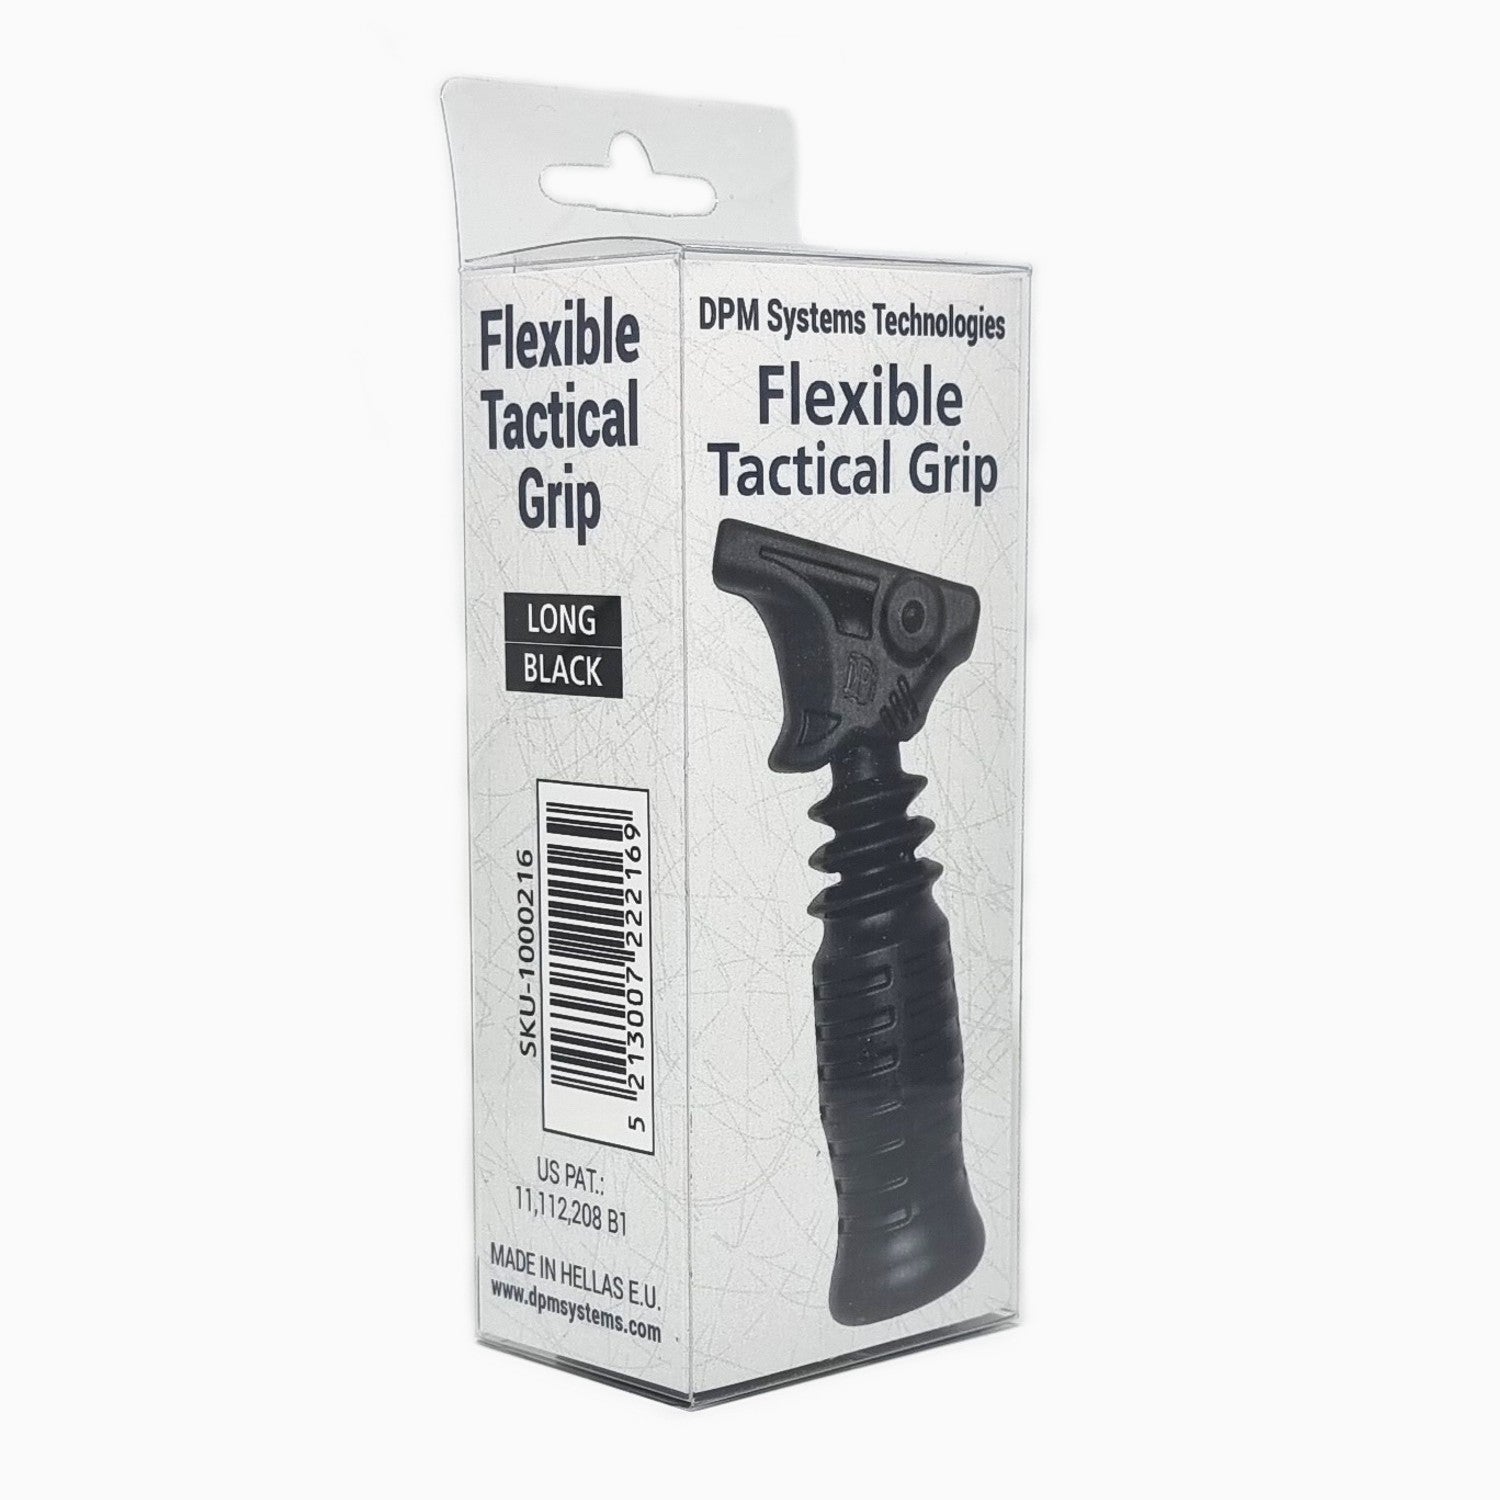 DPM Grip Black Long – Flexible Tactical Grip BLACK